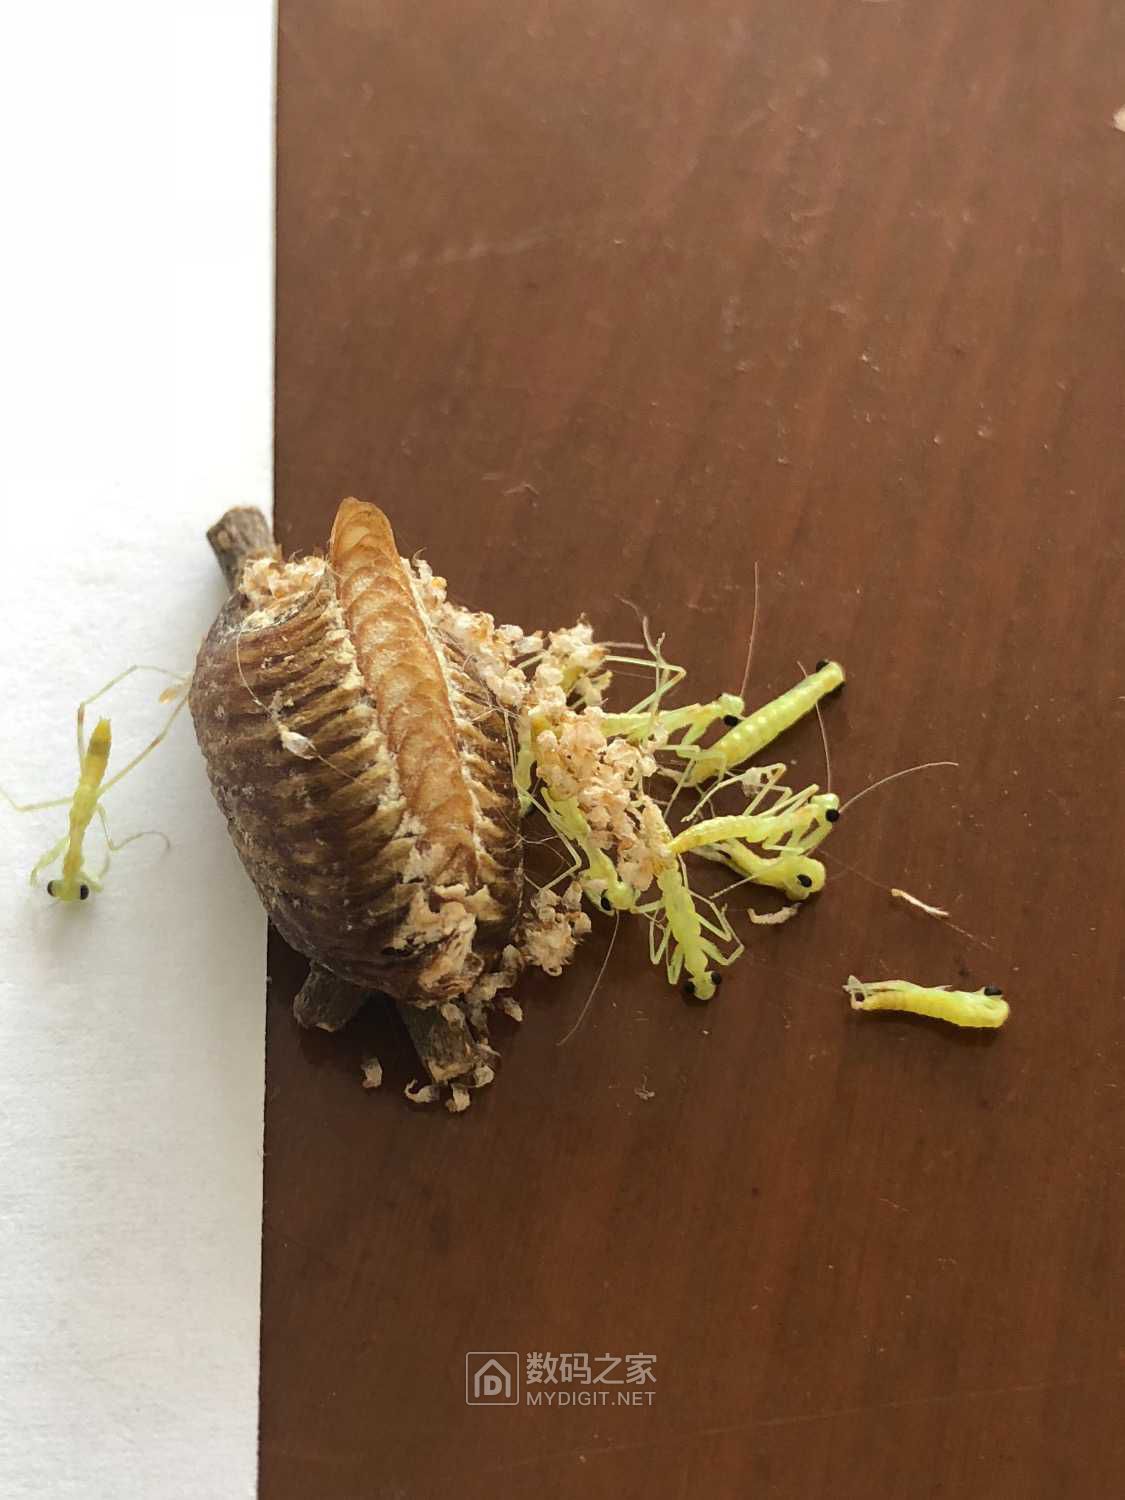 螳螂卵内部的样子图片